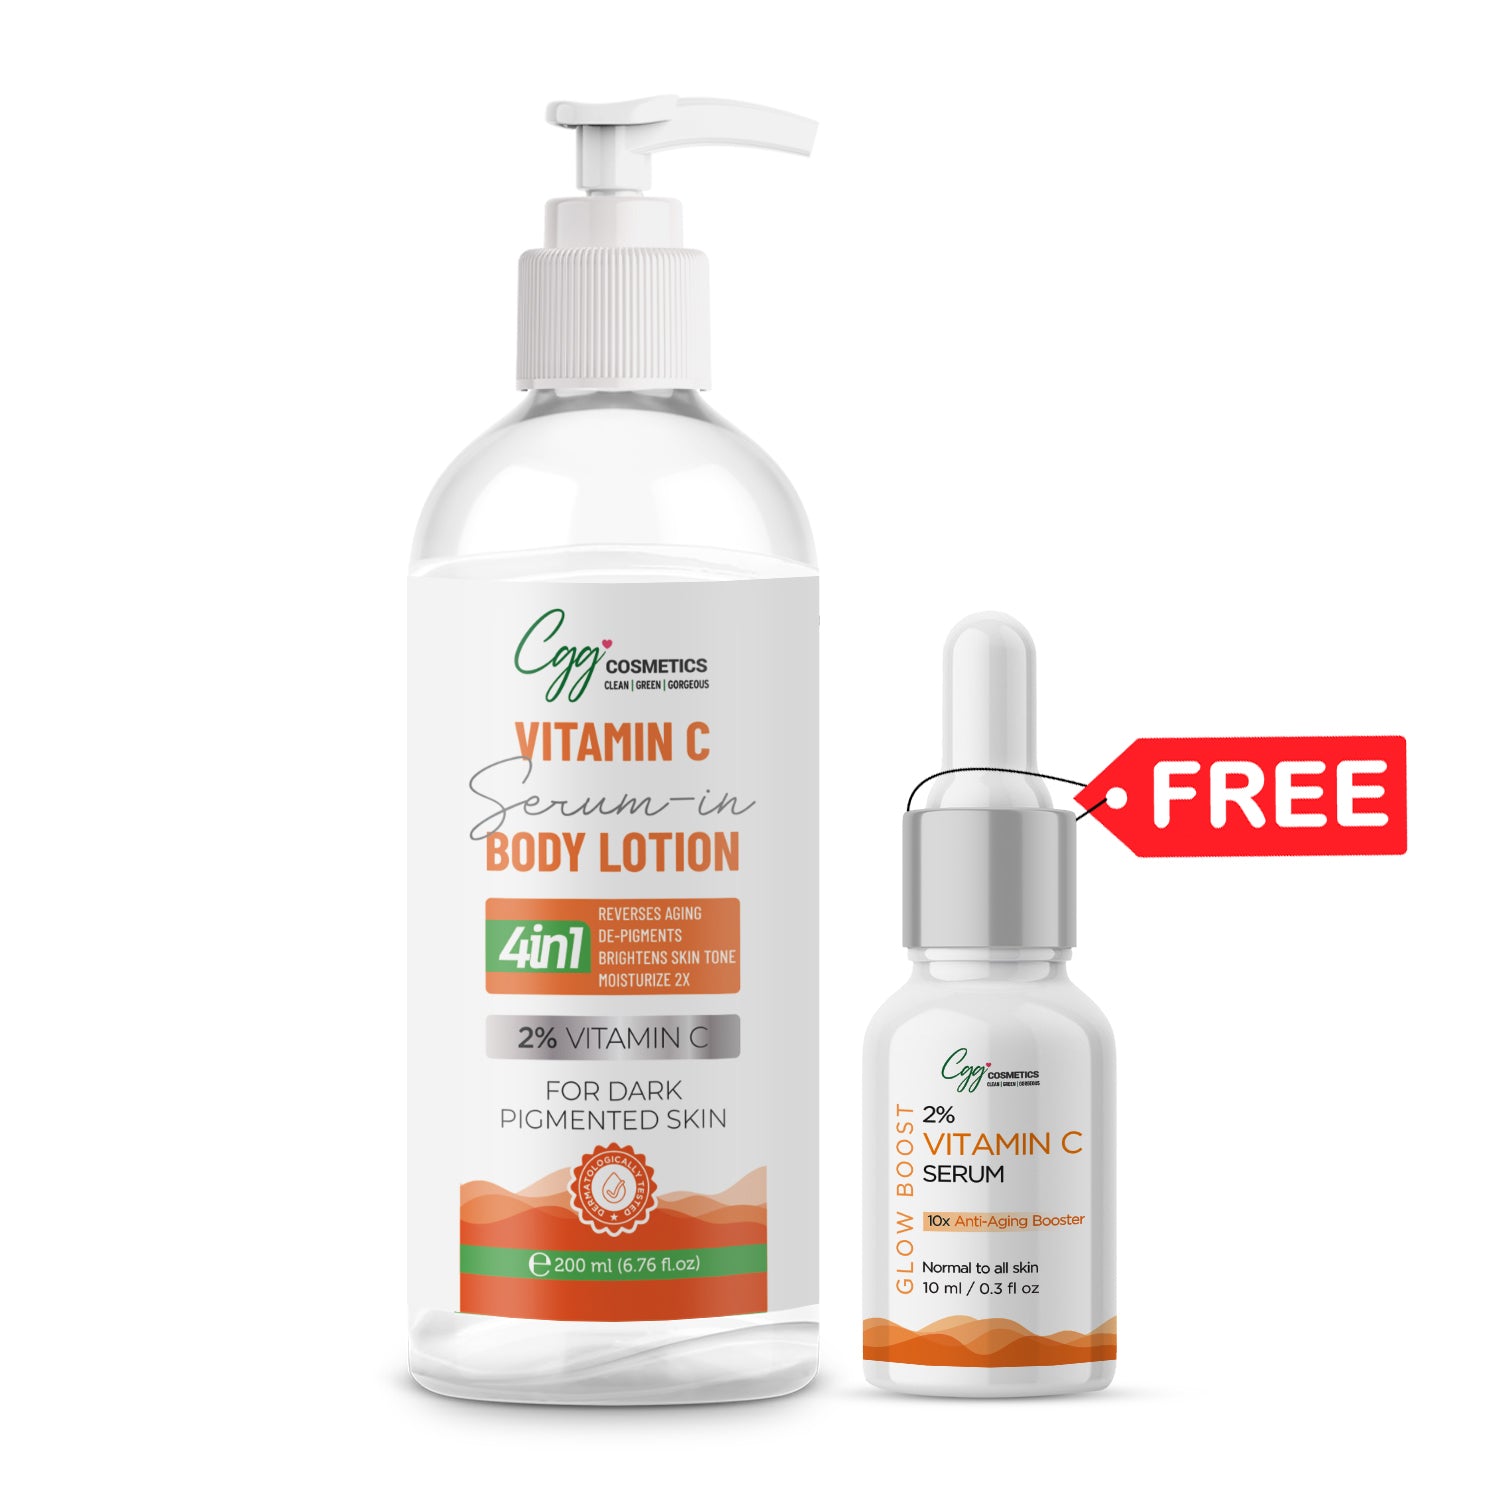 CGG Cosmetics 2% Vitamin C Serum in Body Lotion 200ml + FREE 10ml Sample of 2% Vitamin C Serum